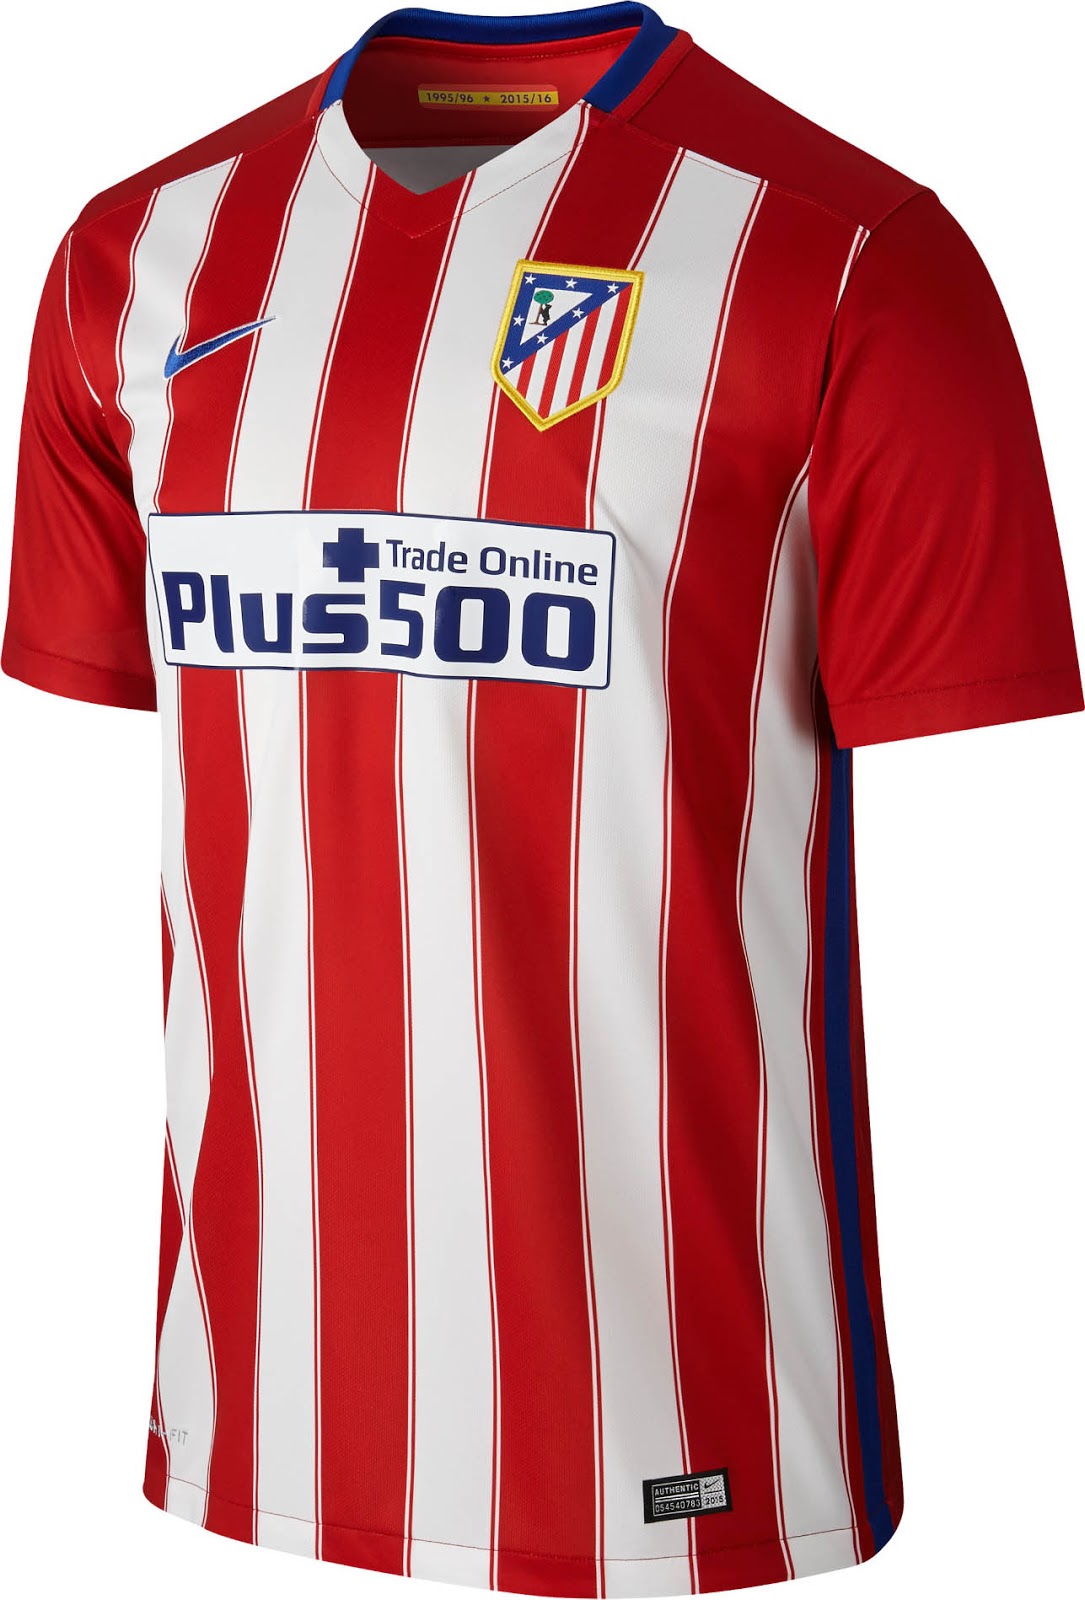 Atlético Madrid 15-16 Kits Released - Footy Headlines